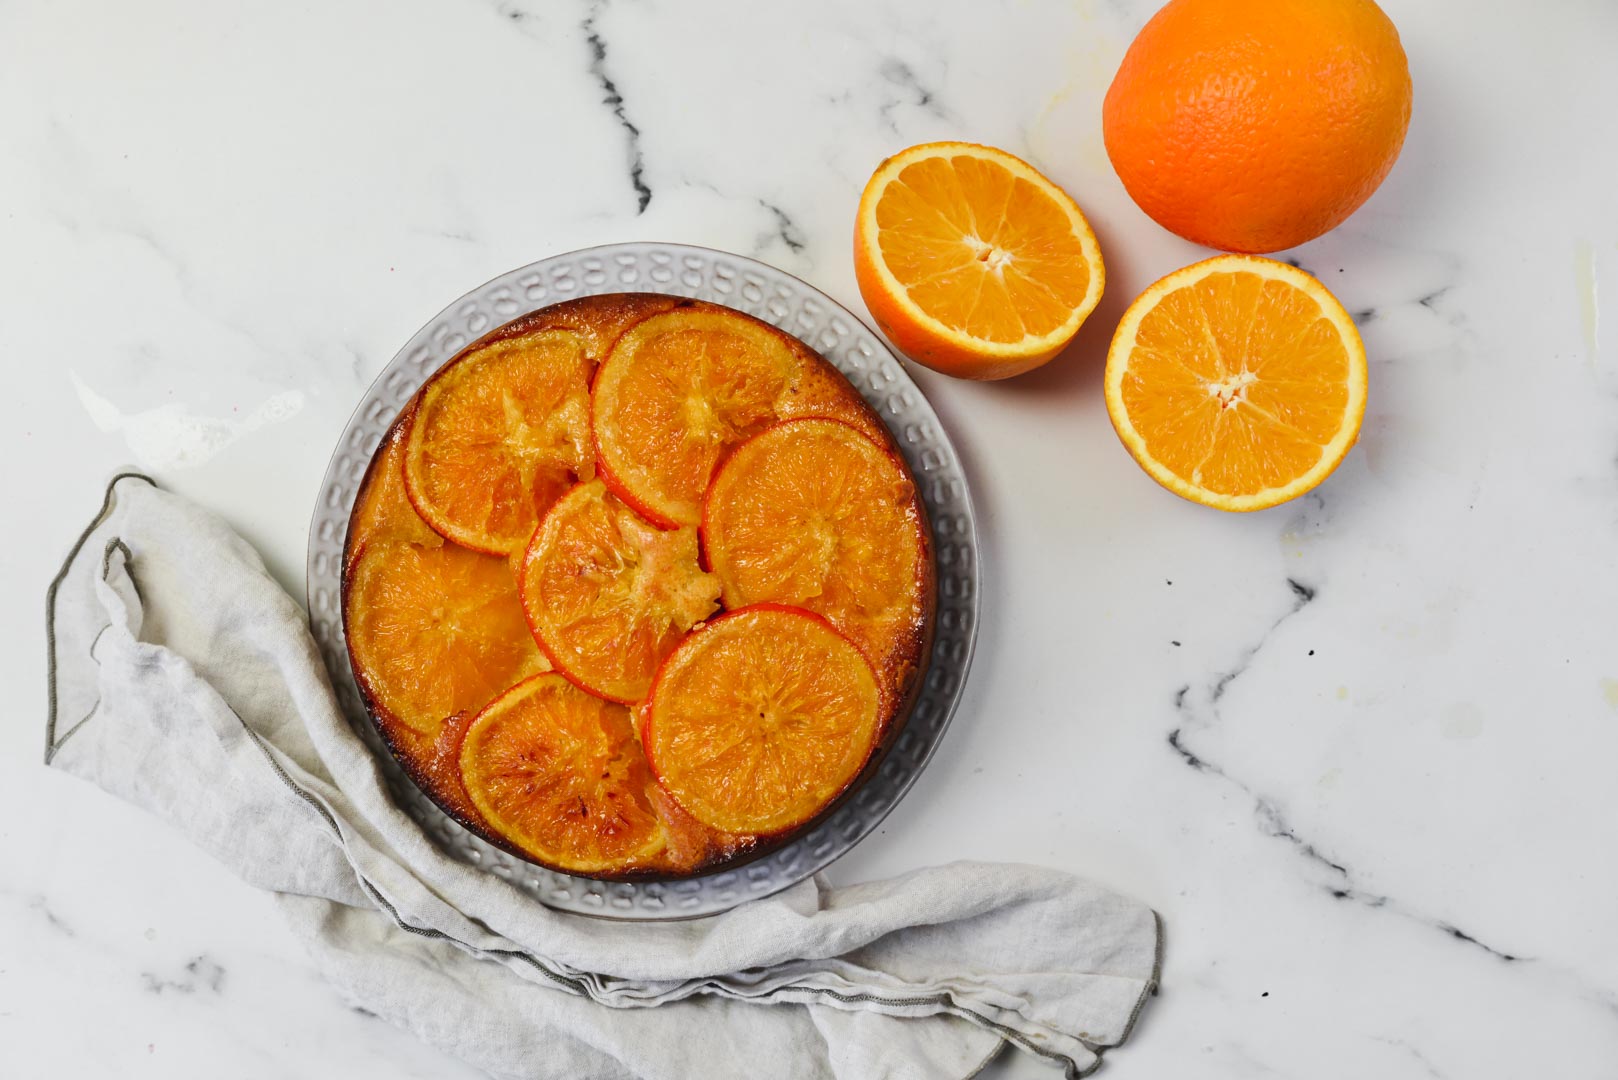 עוגת תפוזים מסוכרים כשרה לפסח